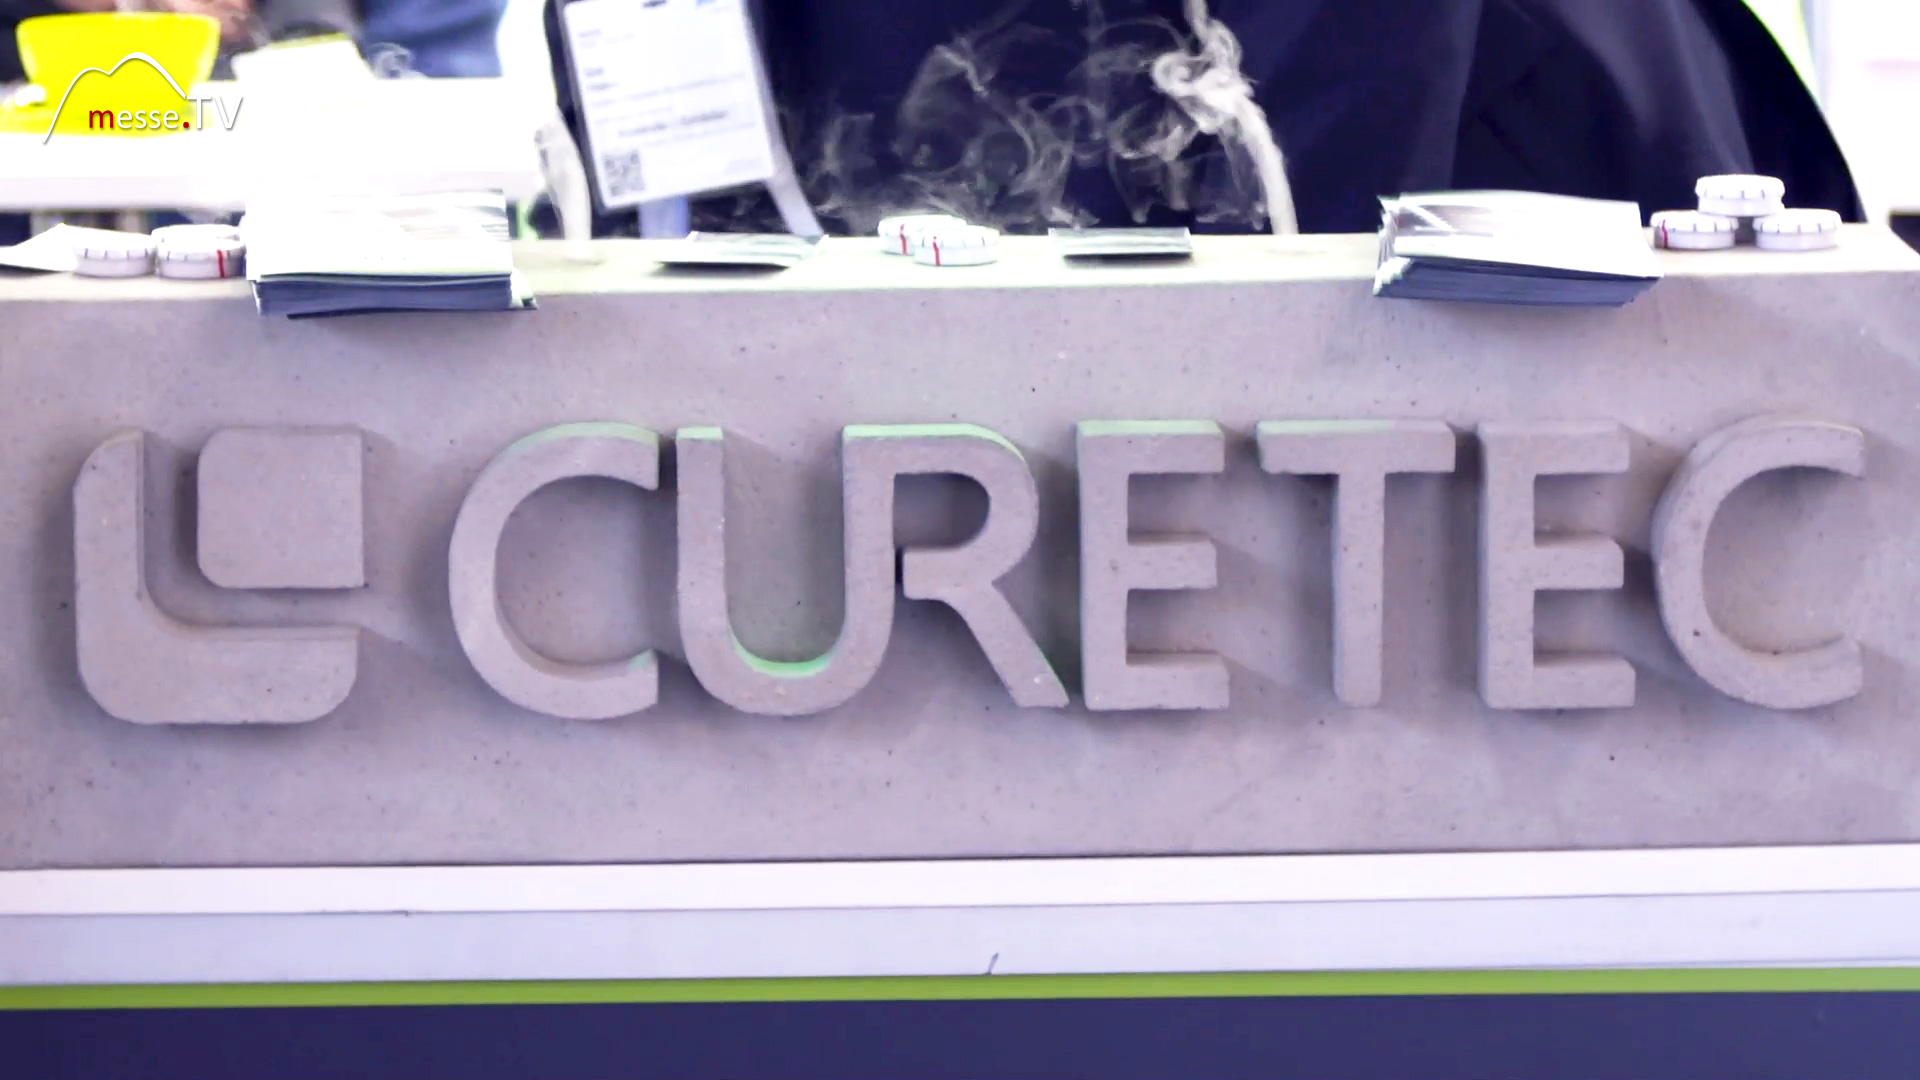 CURETEC concrete curing system